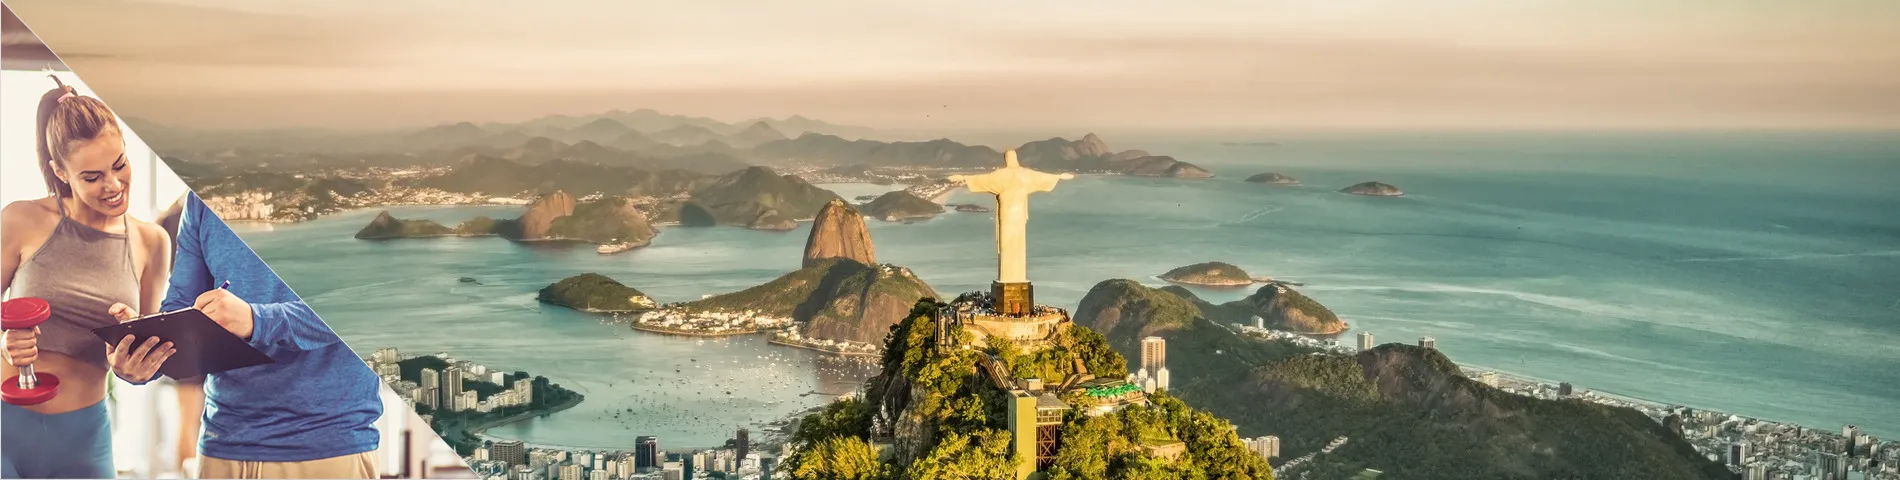 ريو دي جانيرو - البرتغالية واللياقة البدنية